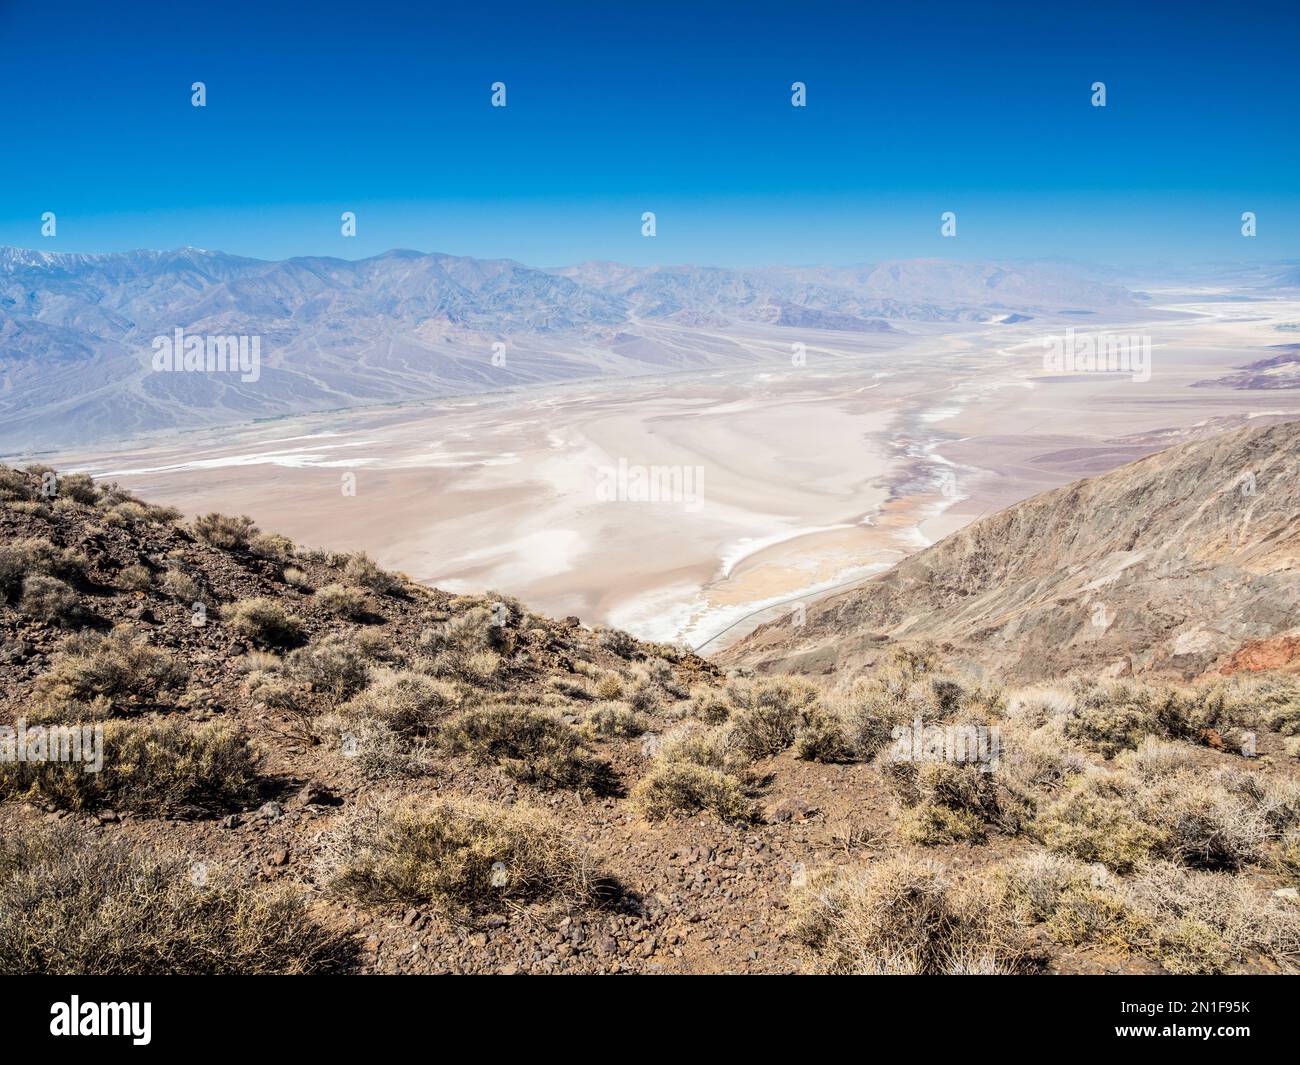 Vue vers le nord depuis Dante's View dans le parc national de la Vallée de la mort, Californie, États-Unis d'Amérique, Amérique du Nord Banque D'Images